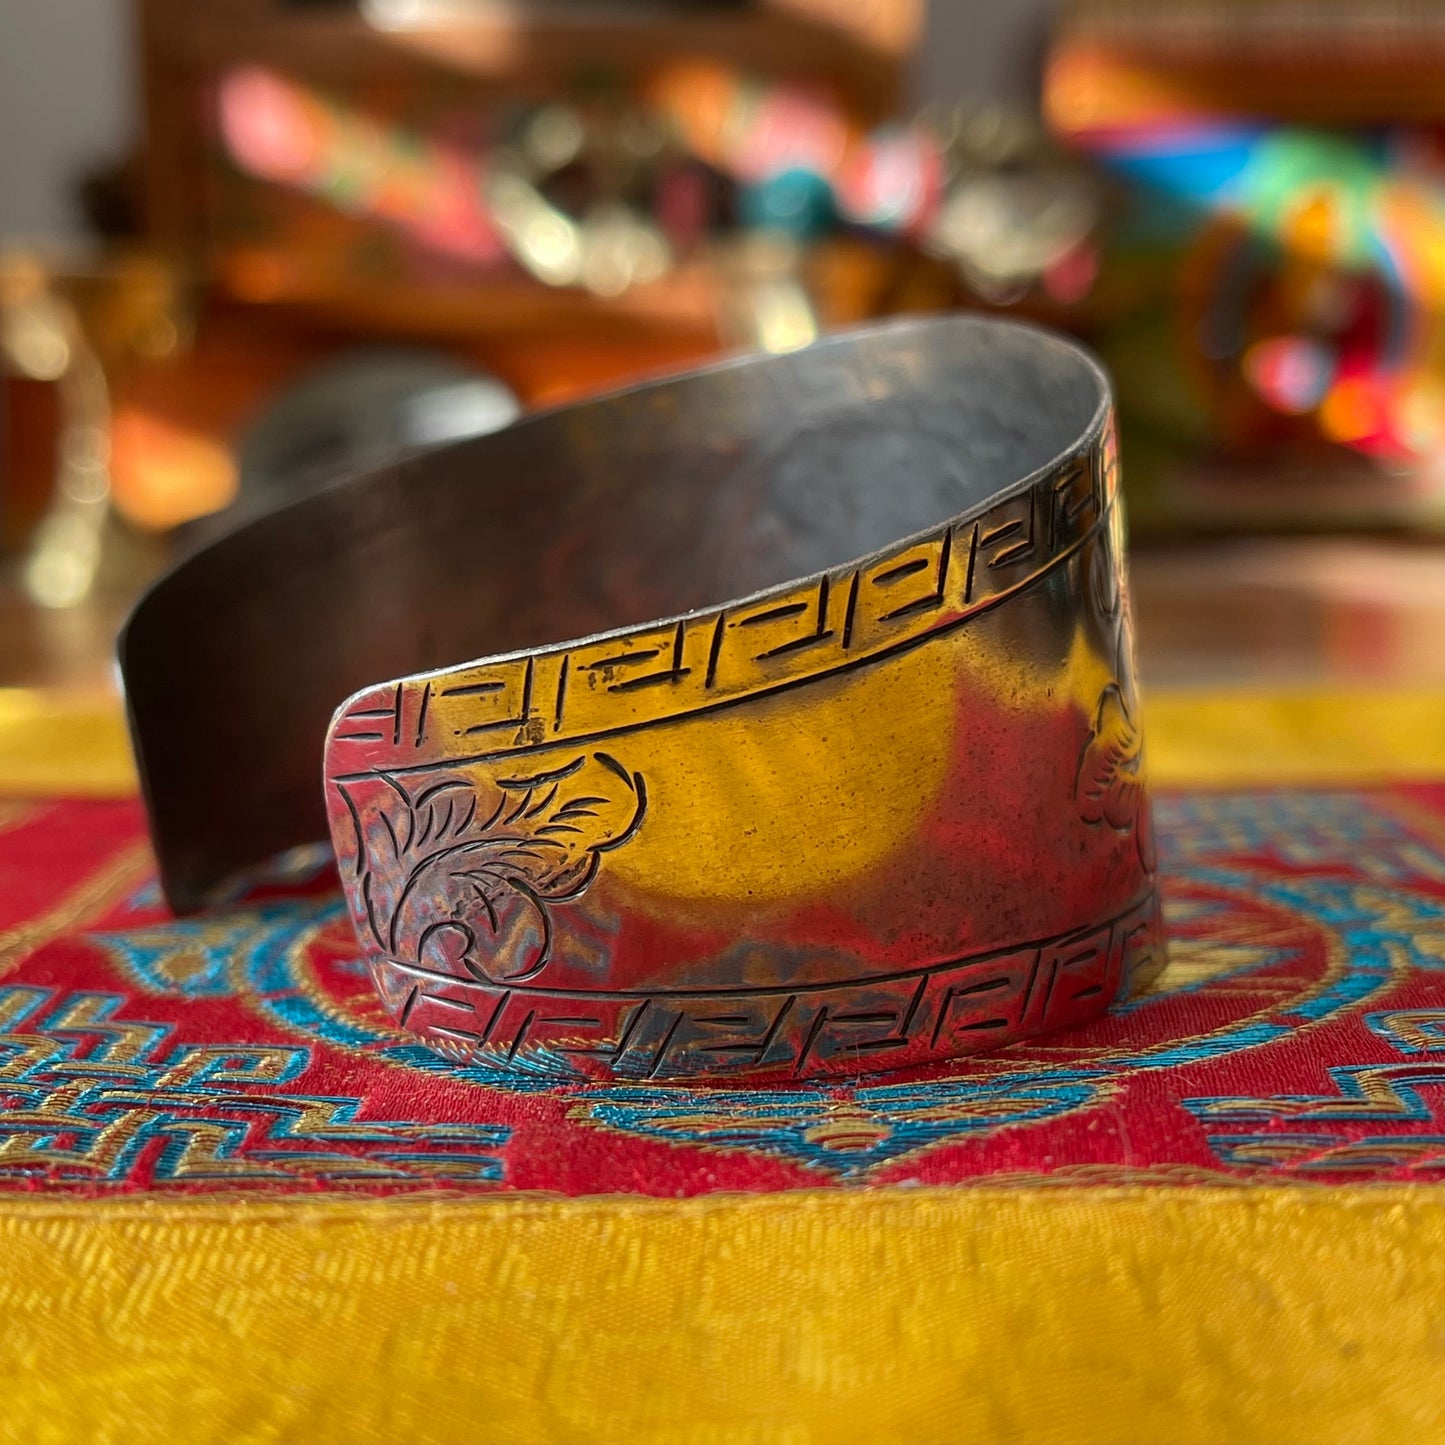 Etched Cuff Bracelet Endless Knot Buddhist bracelet 